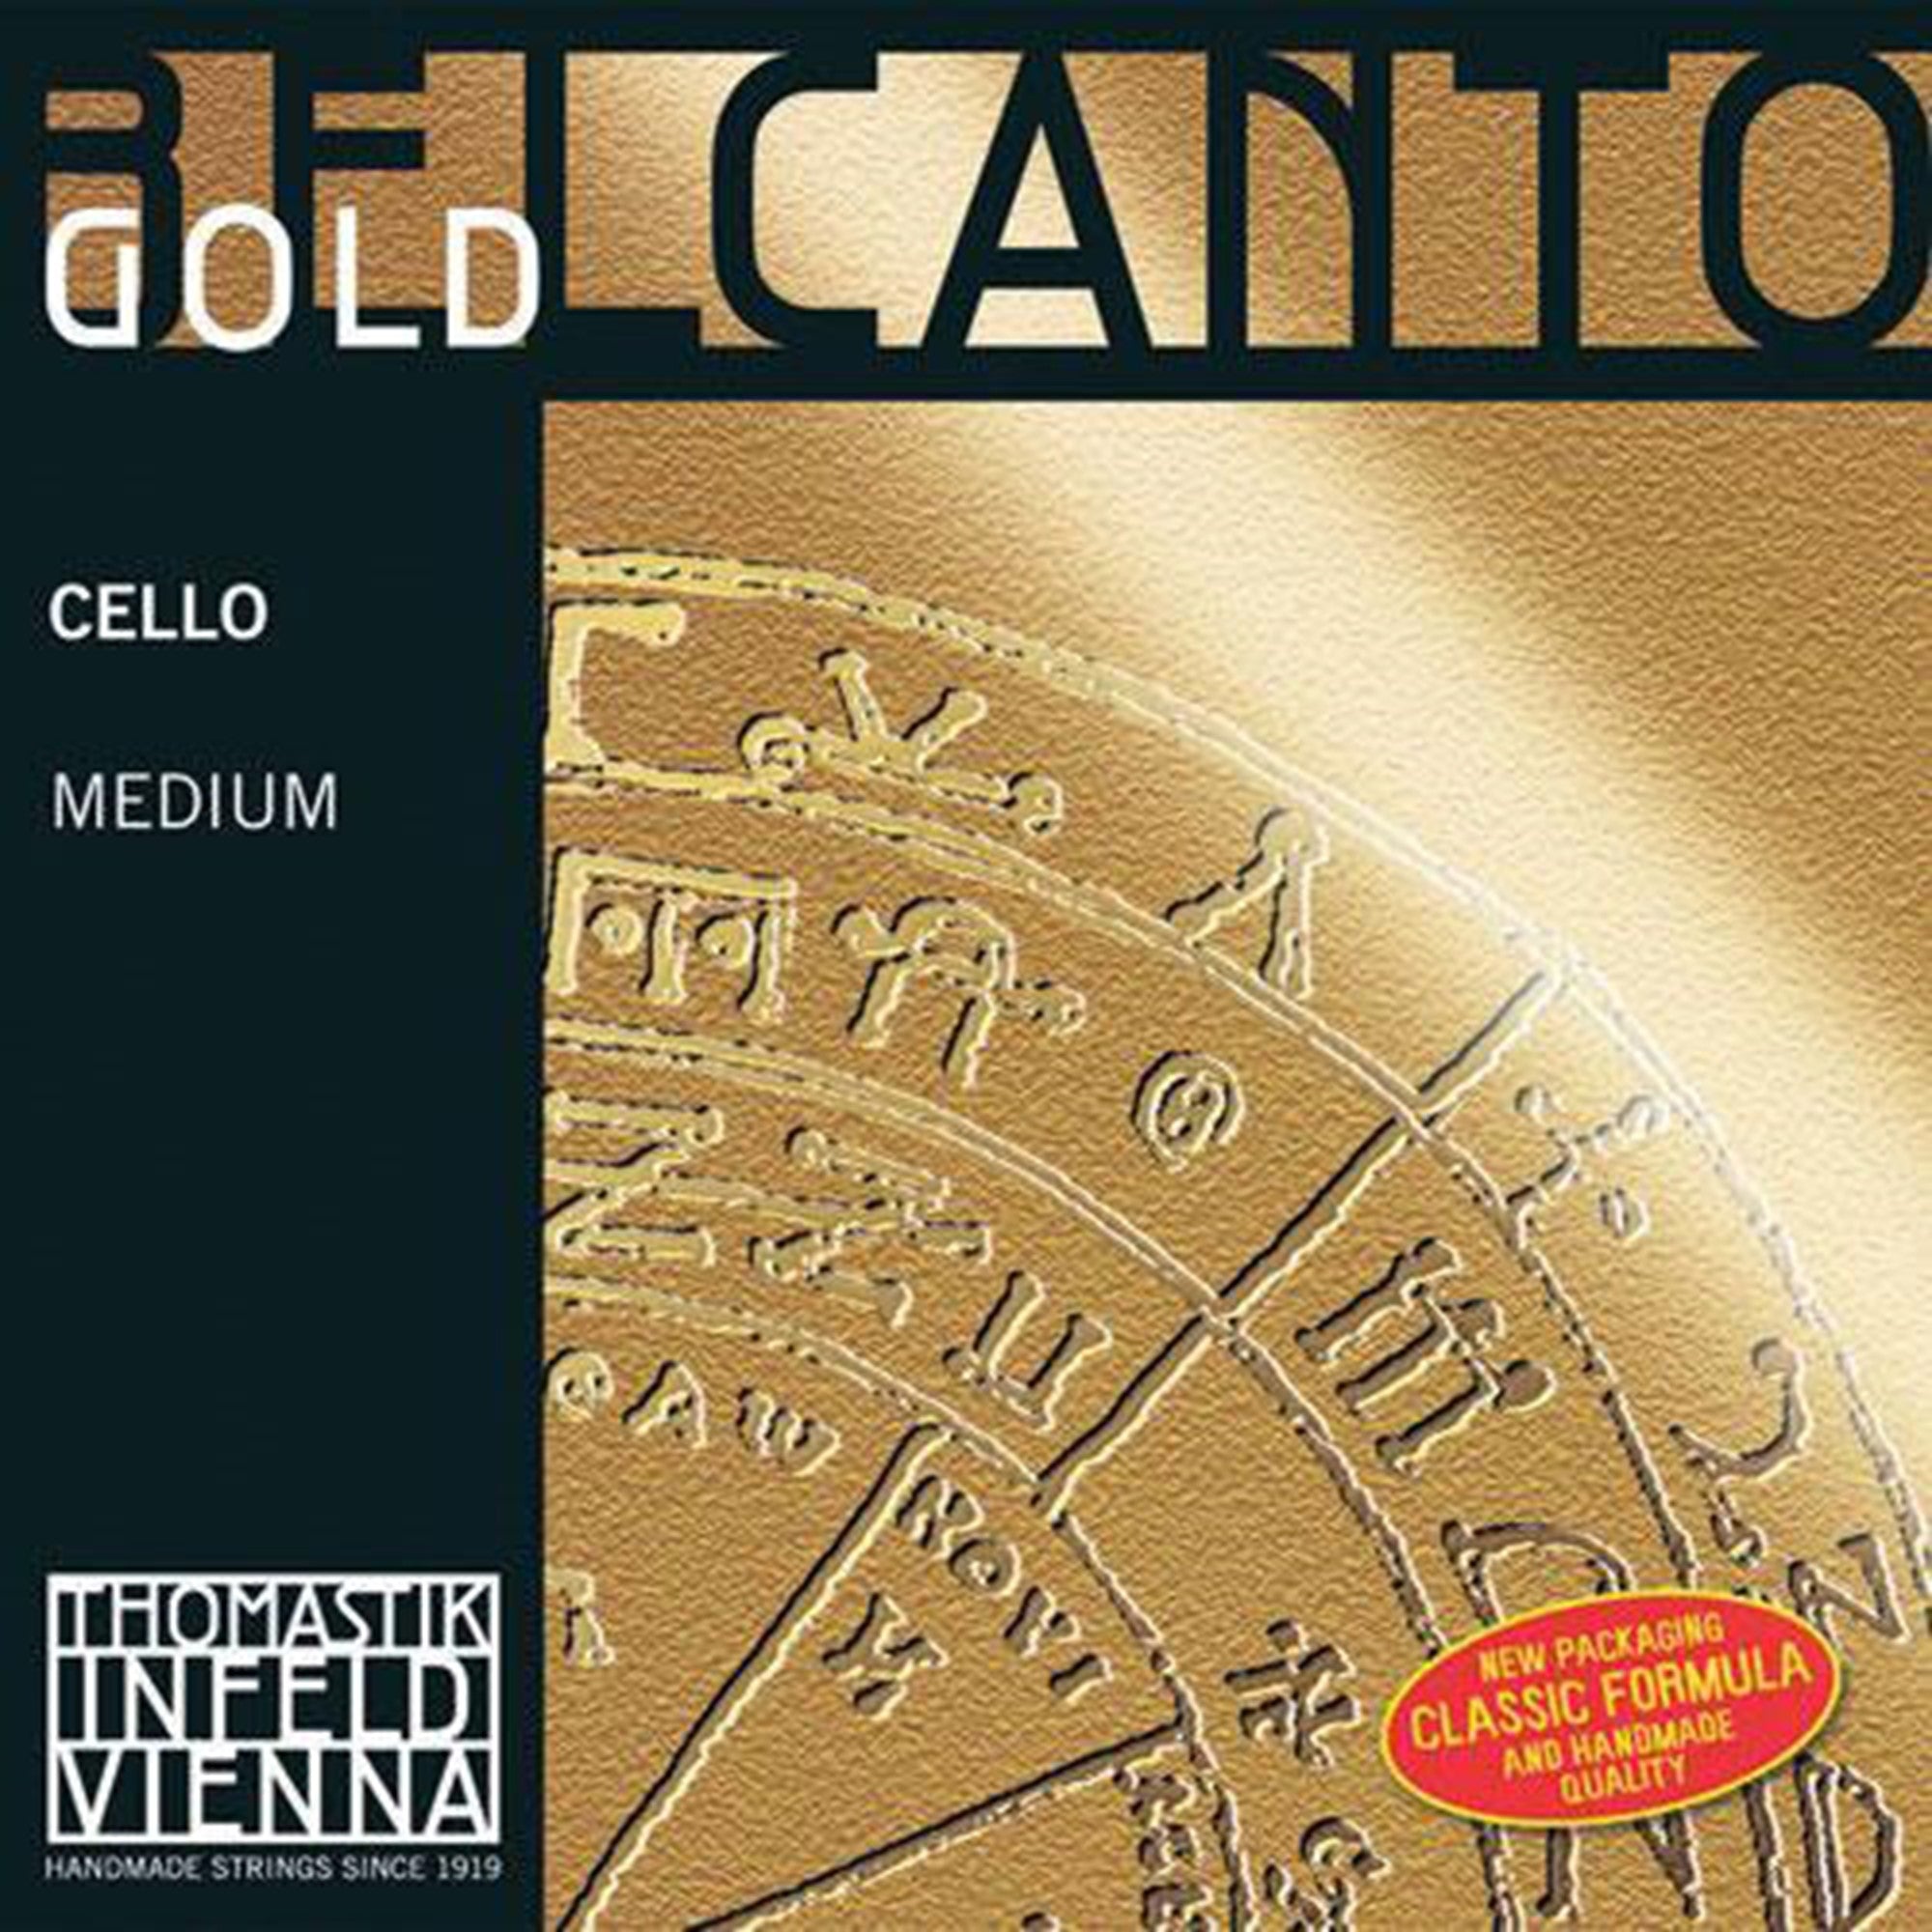 Thomastik Belcanto Gold Cello D String